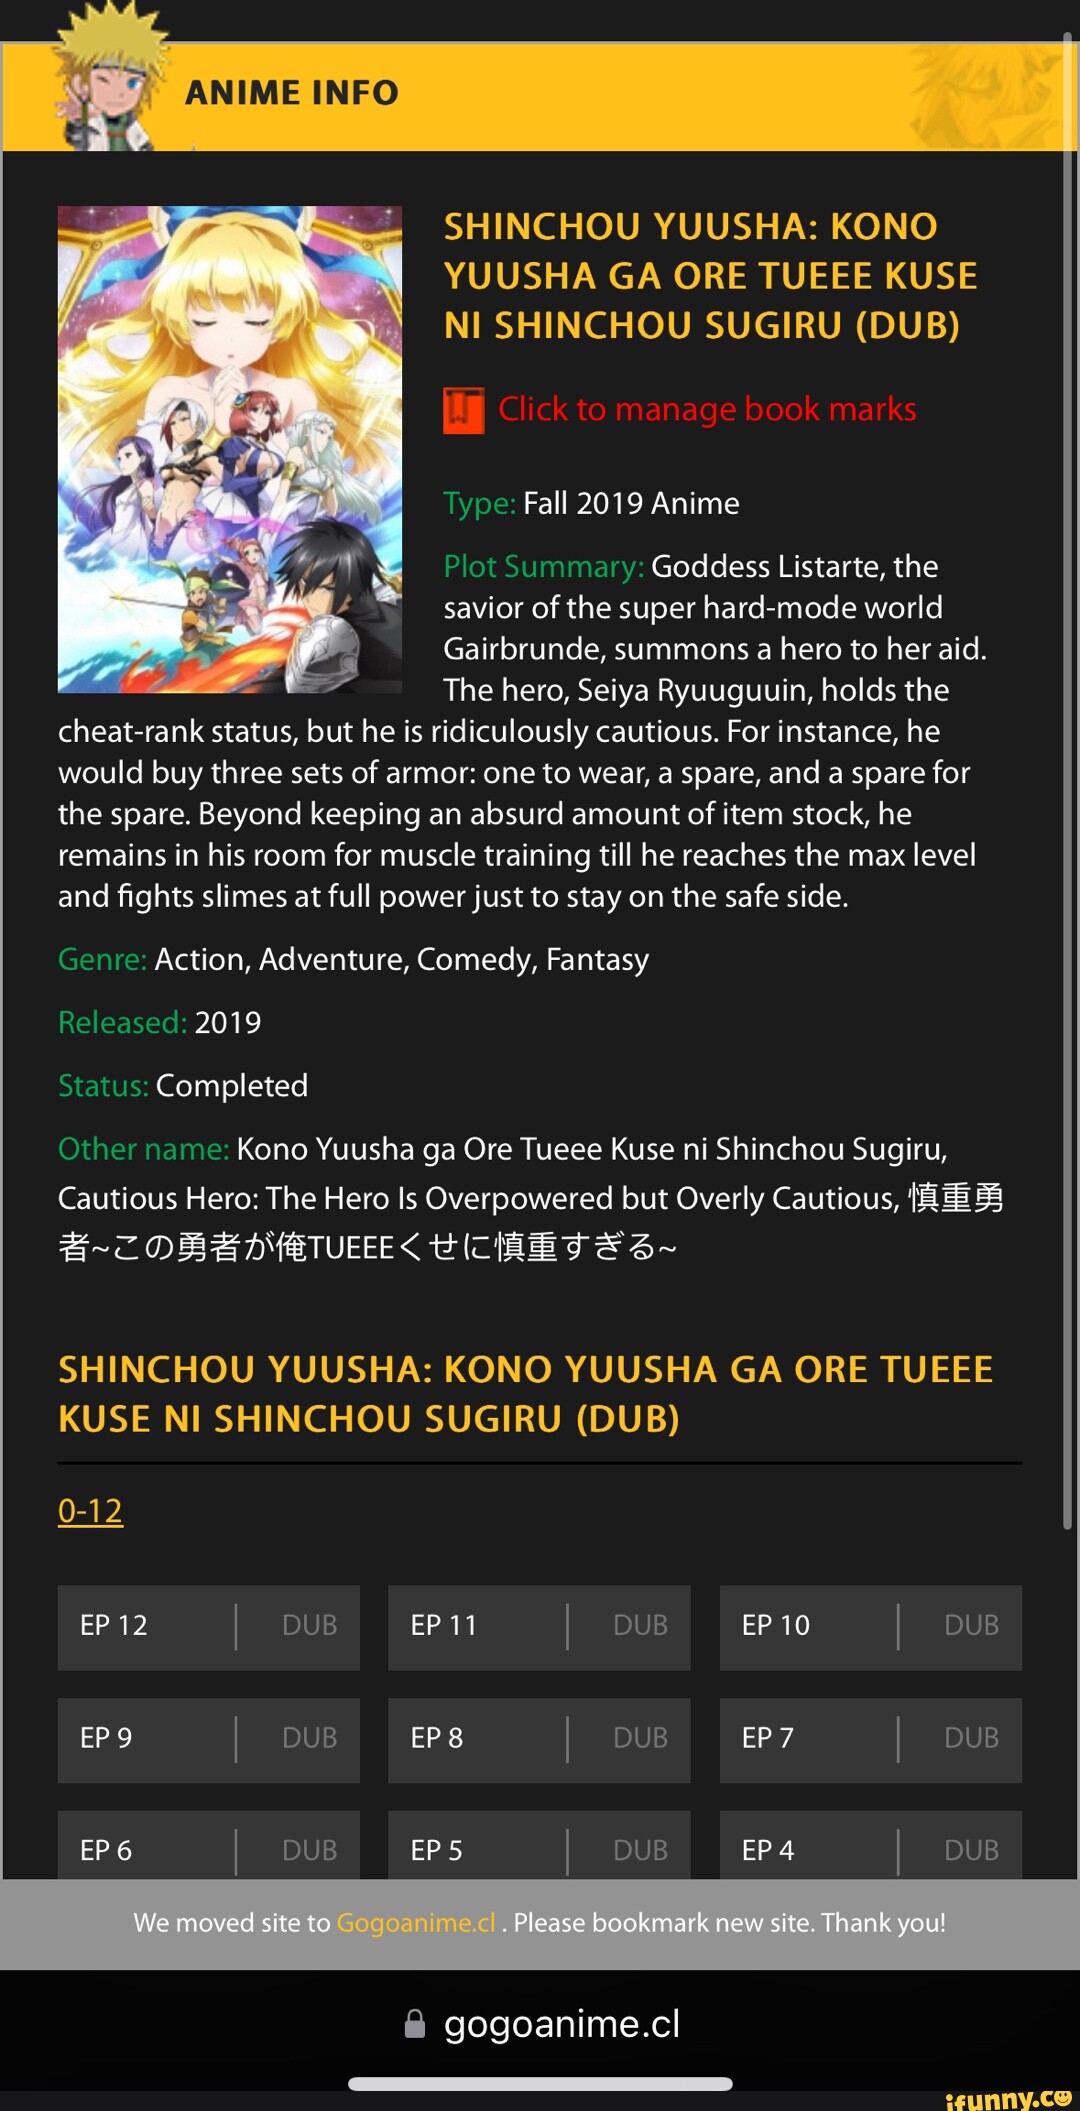 Ver Shinchou Yuusha: Kono Yuusha ga Ore Tueee Kuse ni Shinchou Sugiru  temporada 1 episodio 5 en streaming